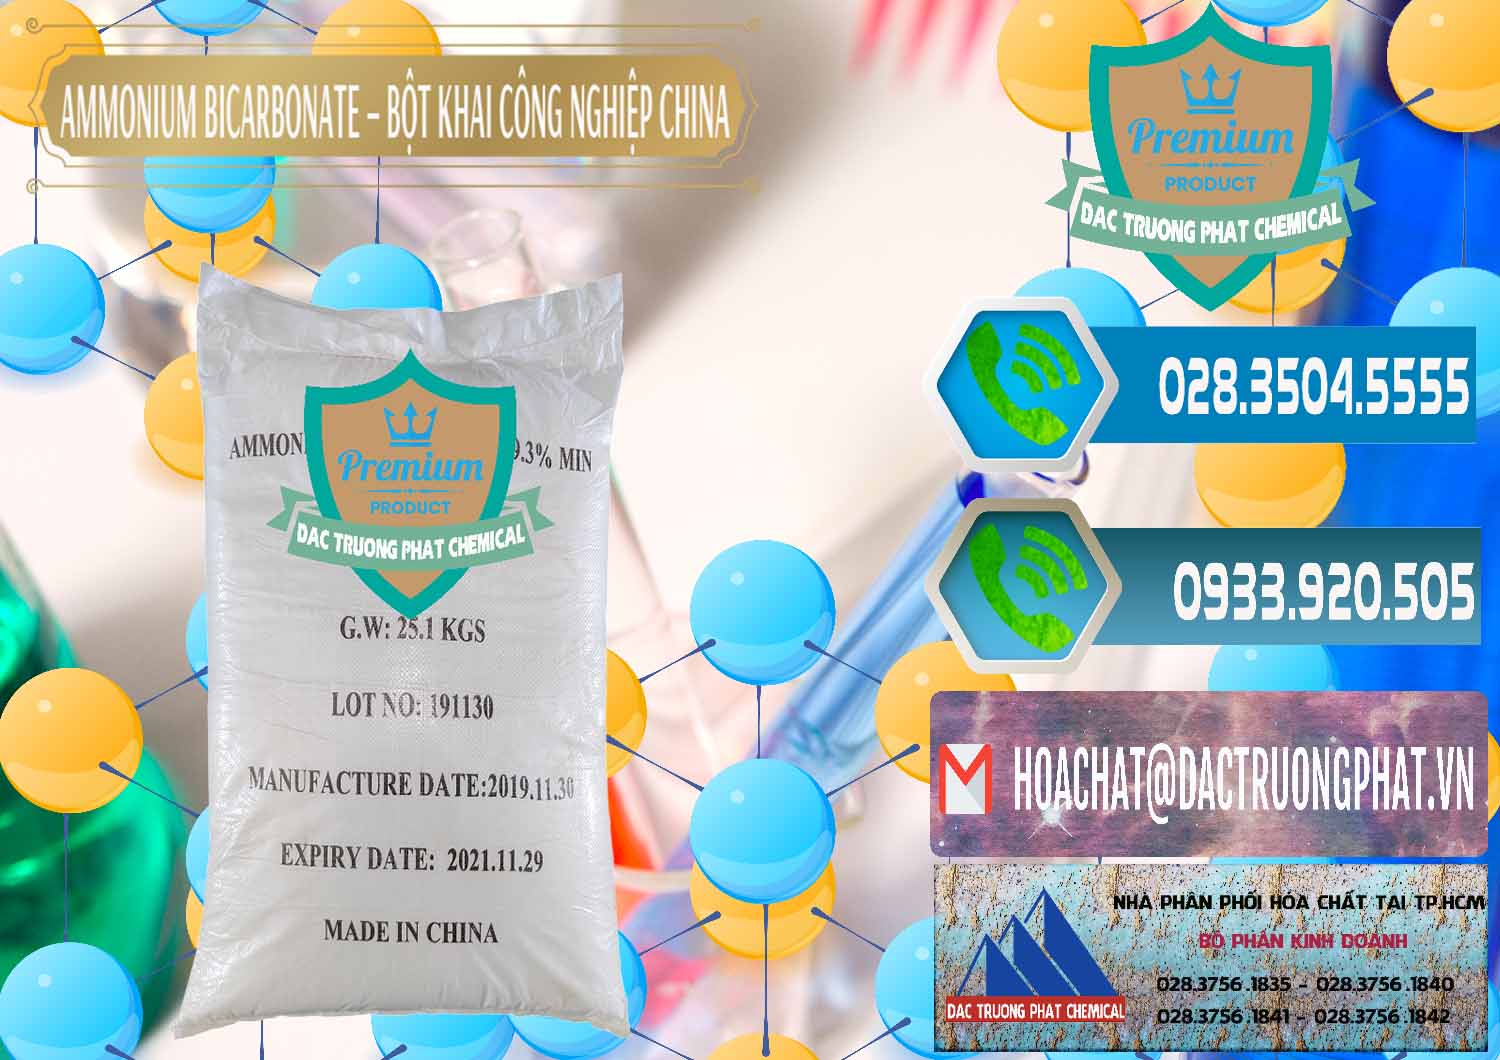 Cty chuyên cung ứng _ bán Ammonium Bicarbonate – Bột Khai Công Nghiệp Trung Quốc China - 0020 - Nơi chuyên kinh doanh và cung cấp hóa chất tại TP.HCM - congtyhoachat.net